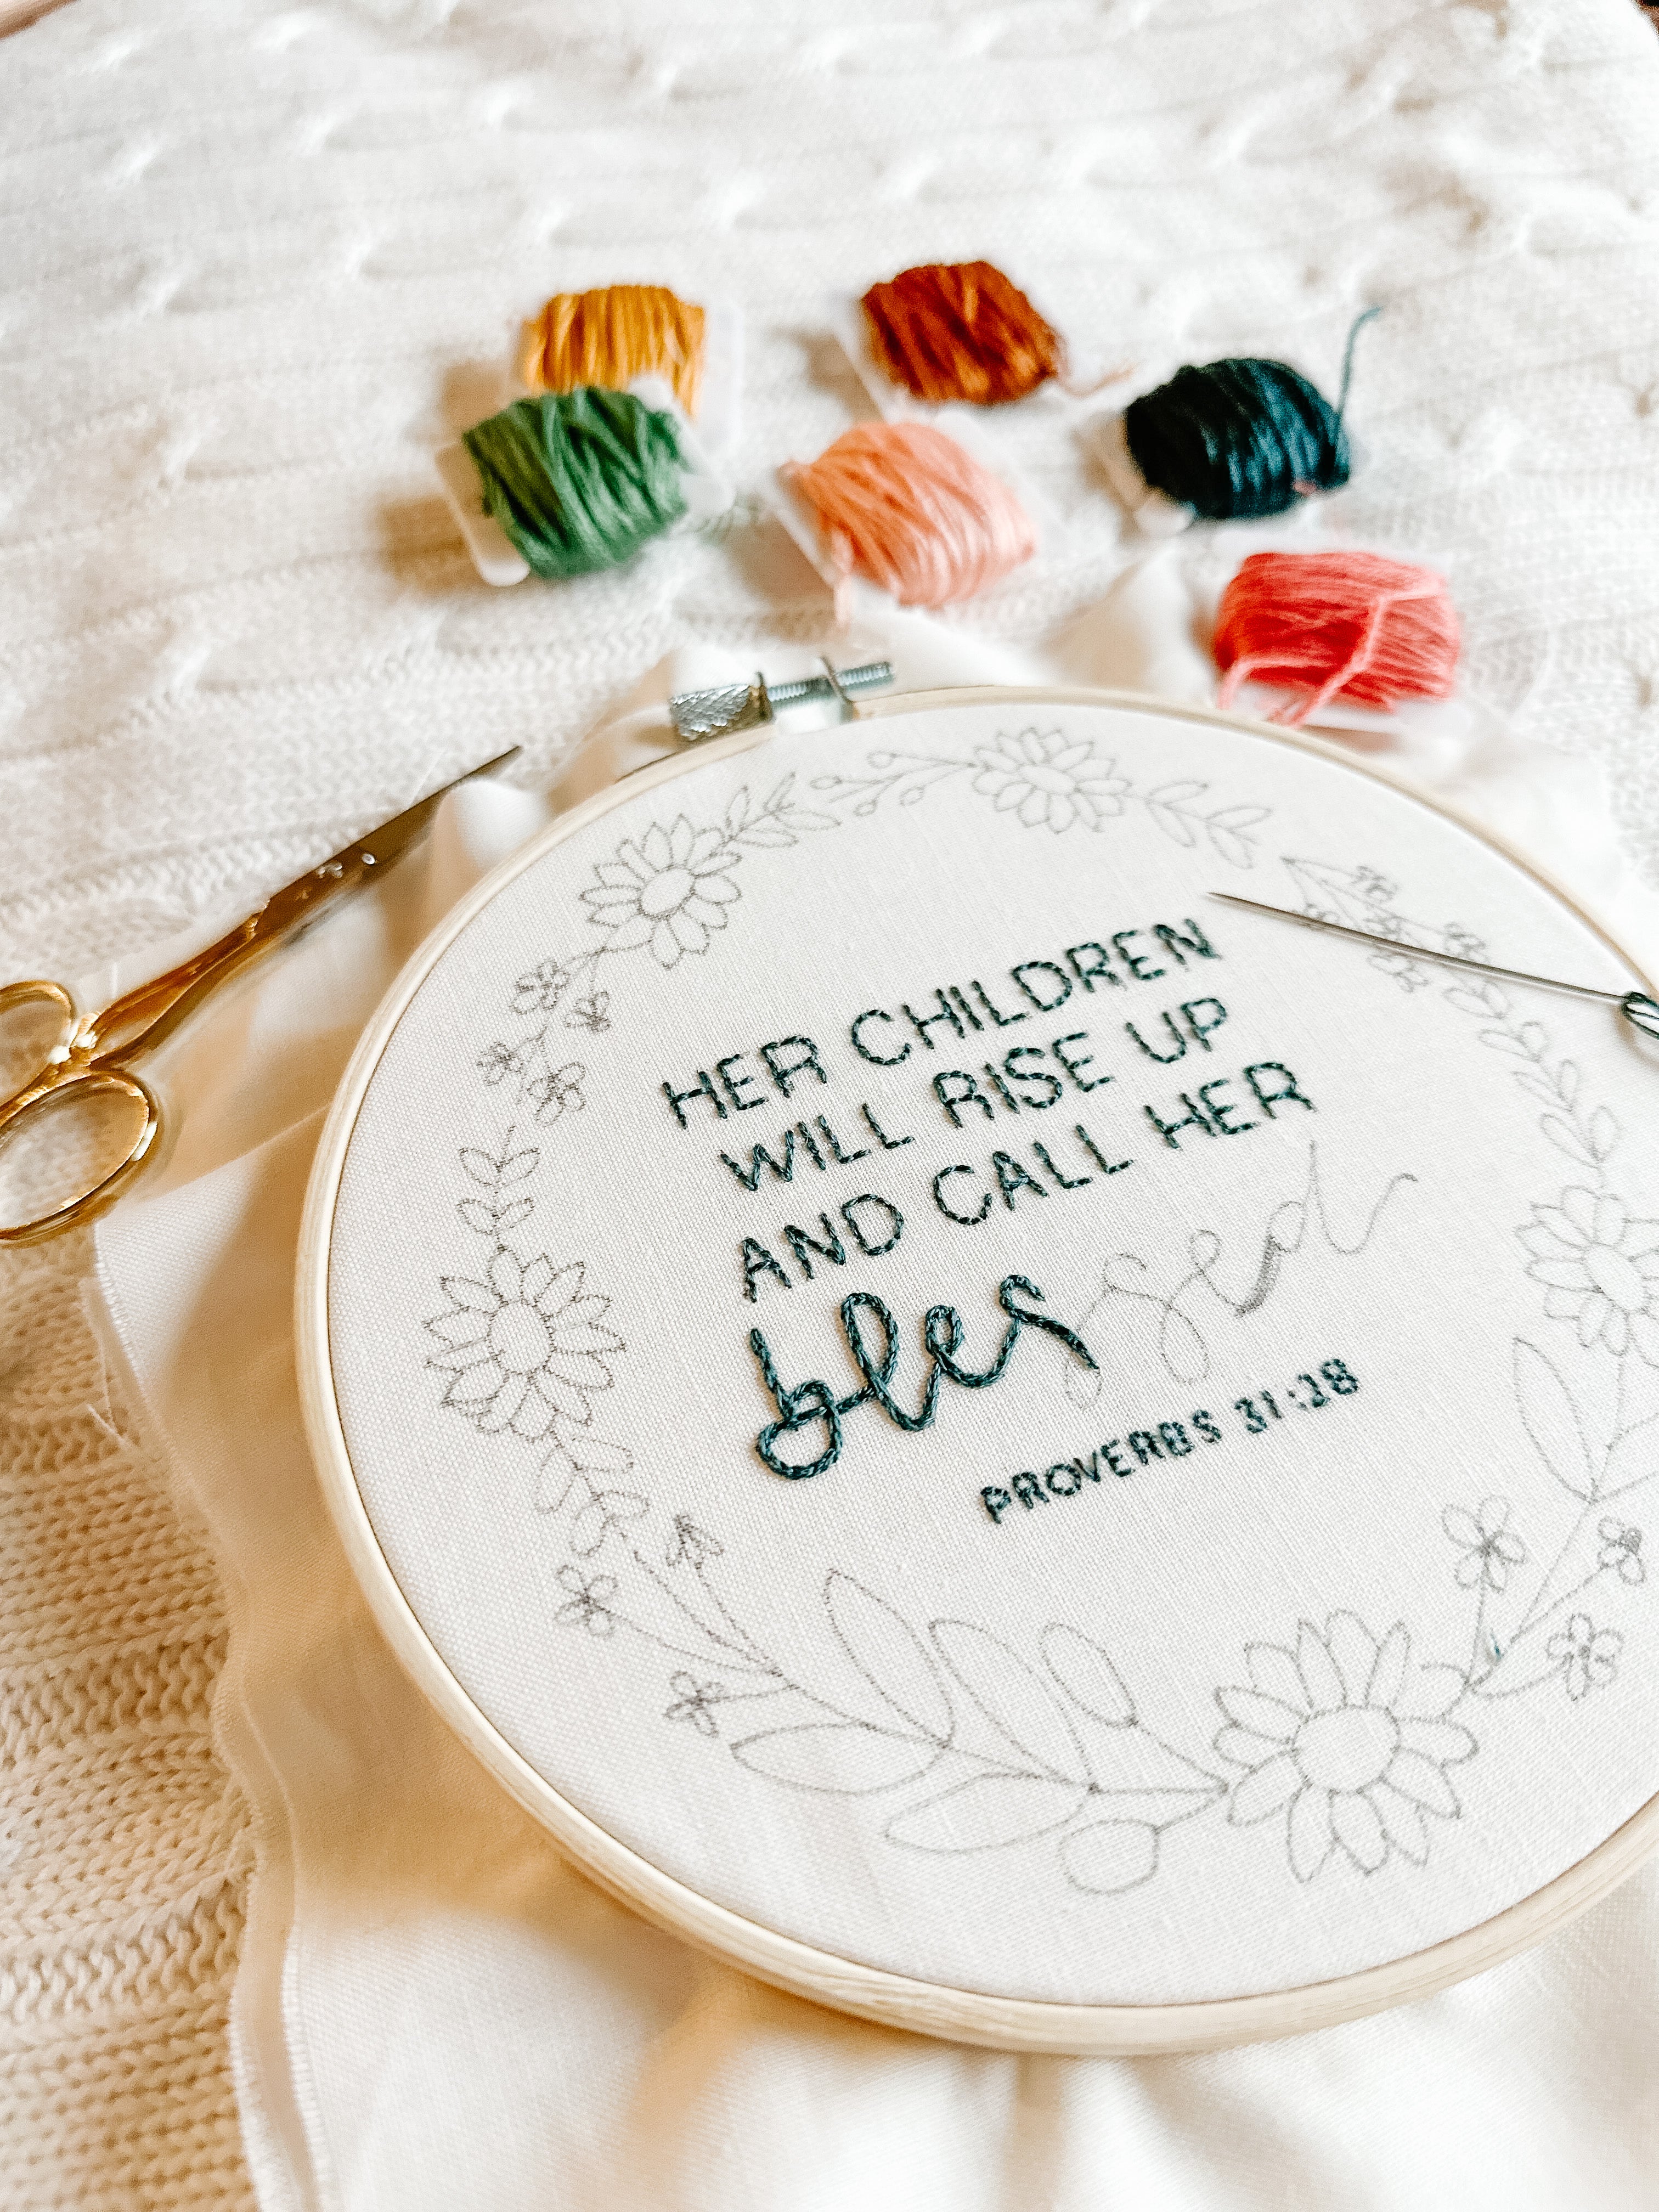 Anniversary calender | Embroidery hoop art diy, Hand embroidery art, Embroidery  gifts